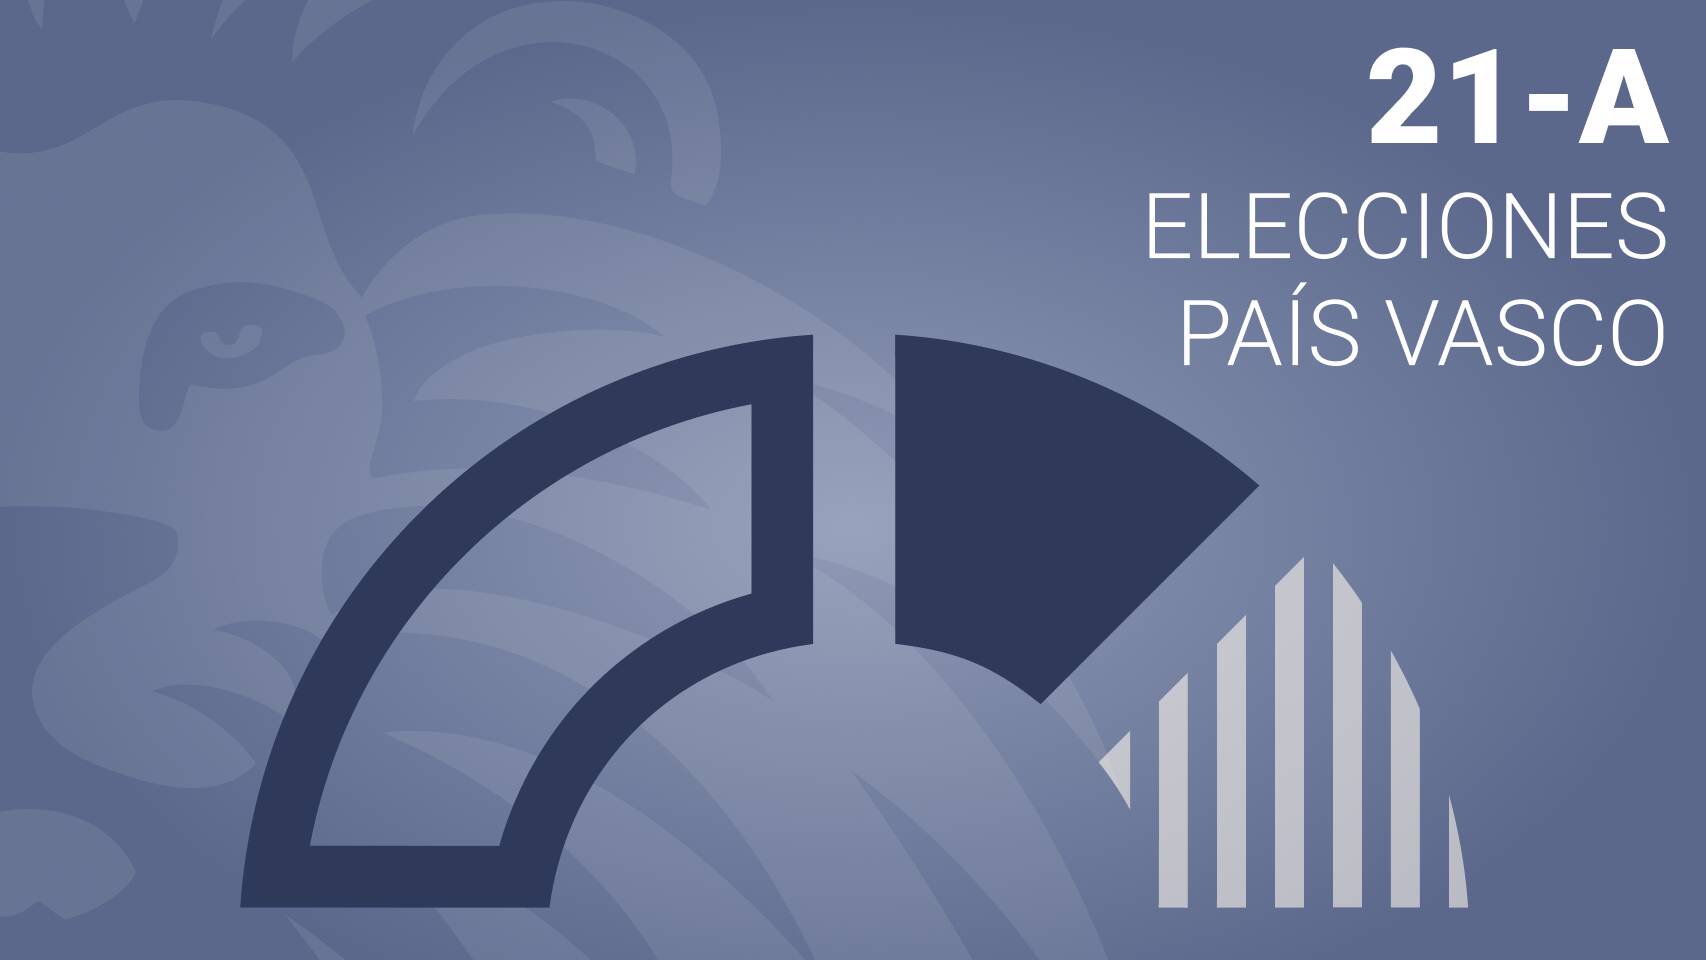 Estos son los resultados de las elecciones vascas en Donostia / San Sebastián - PNV gana con el 31.17% de los votos